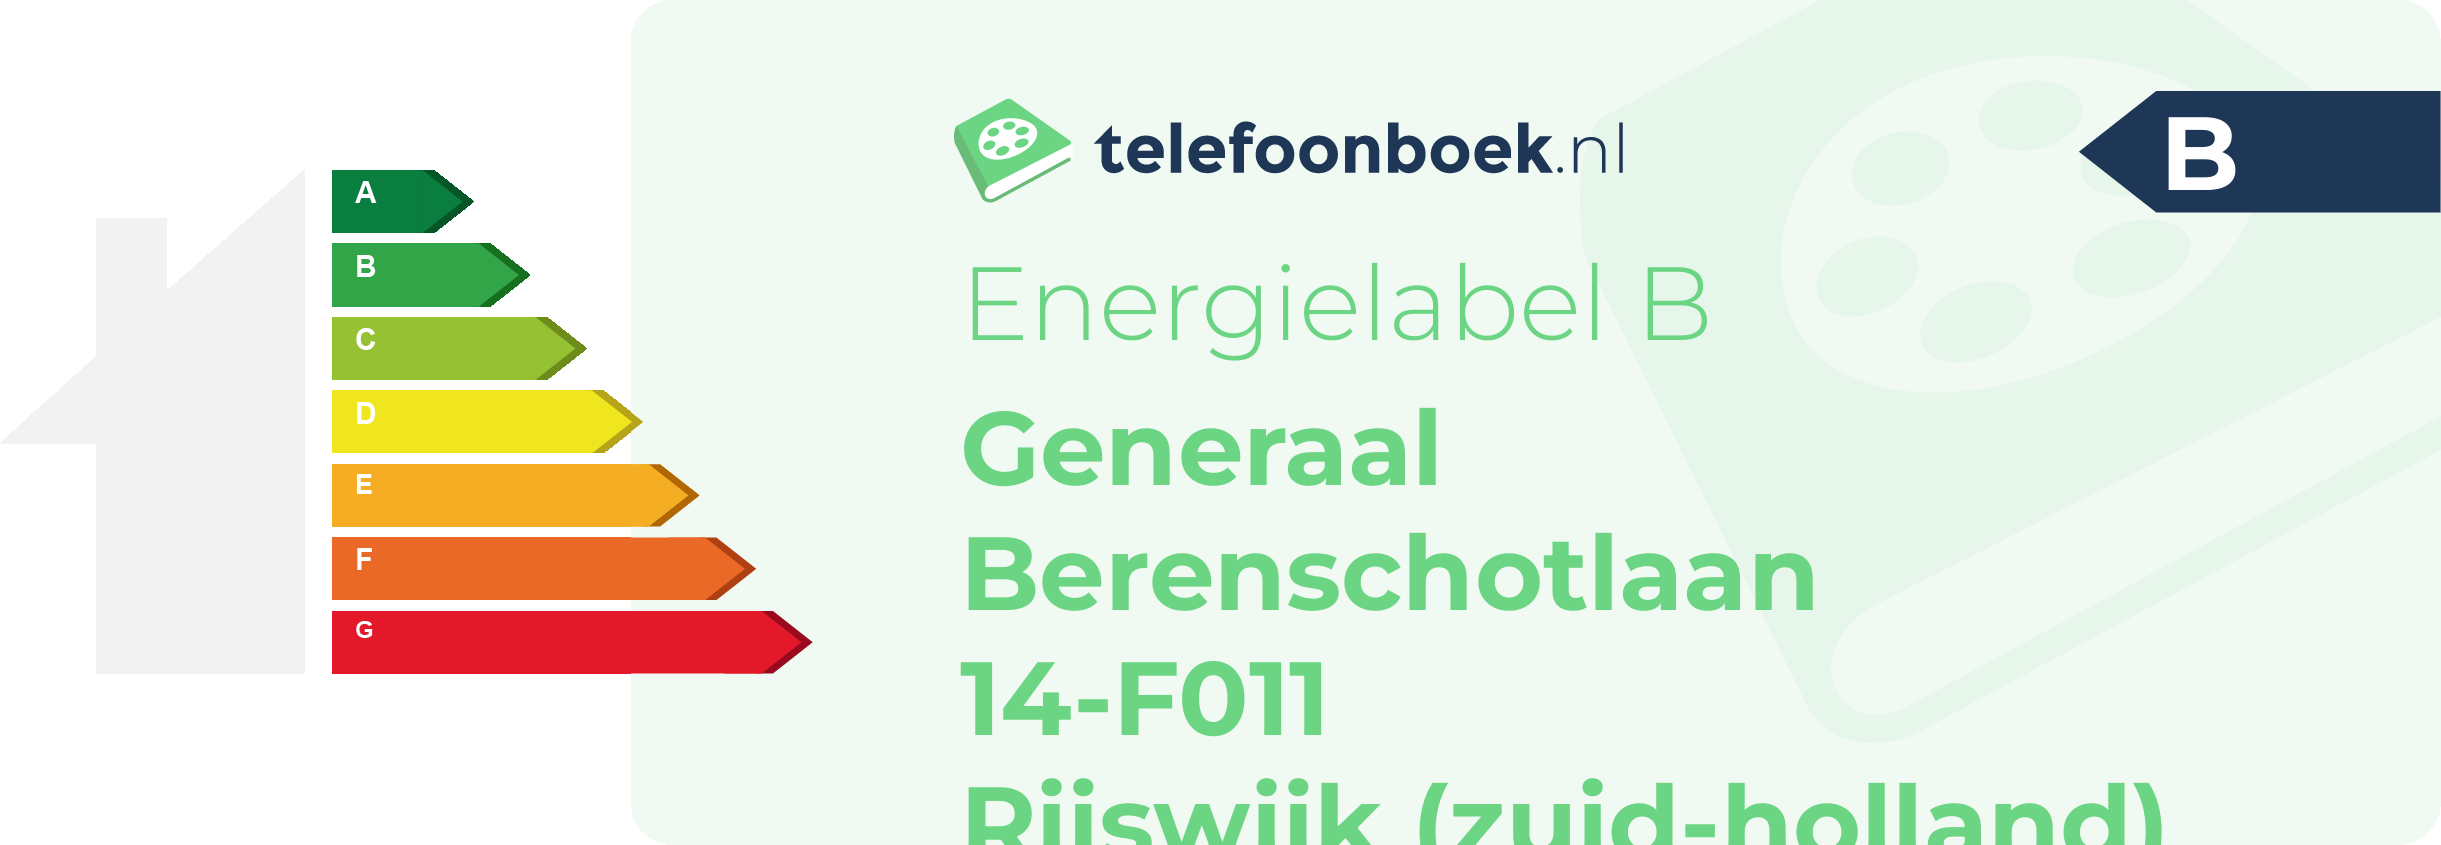 Energielabel Generaal Berenschotlaan 14-F011 Rijswijk (Zuid-Holland)